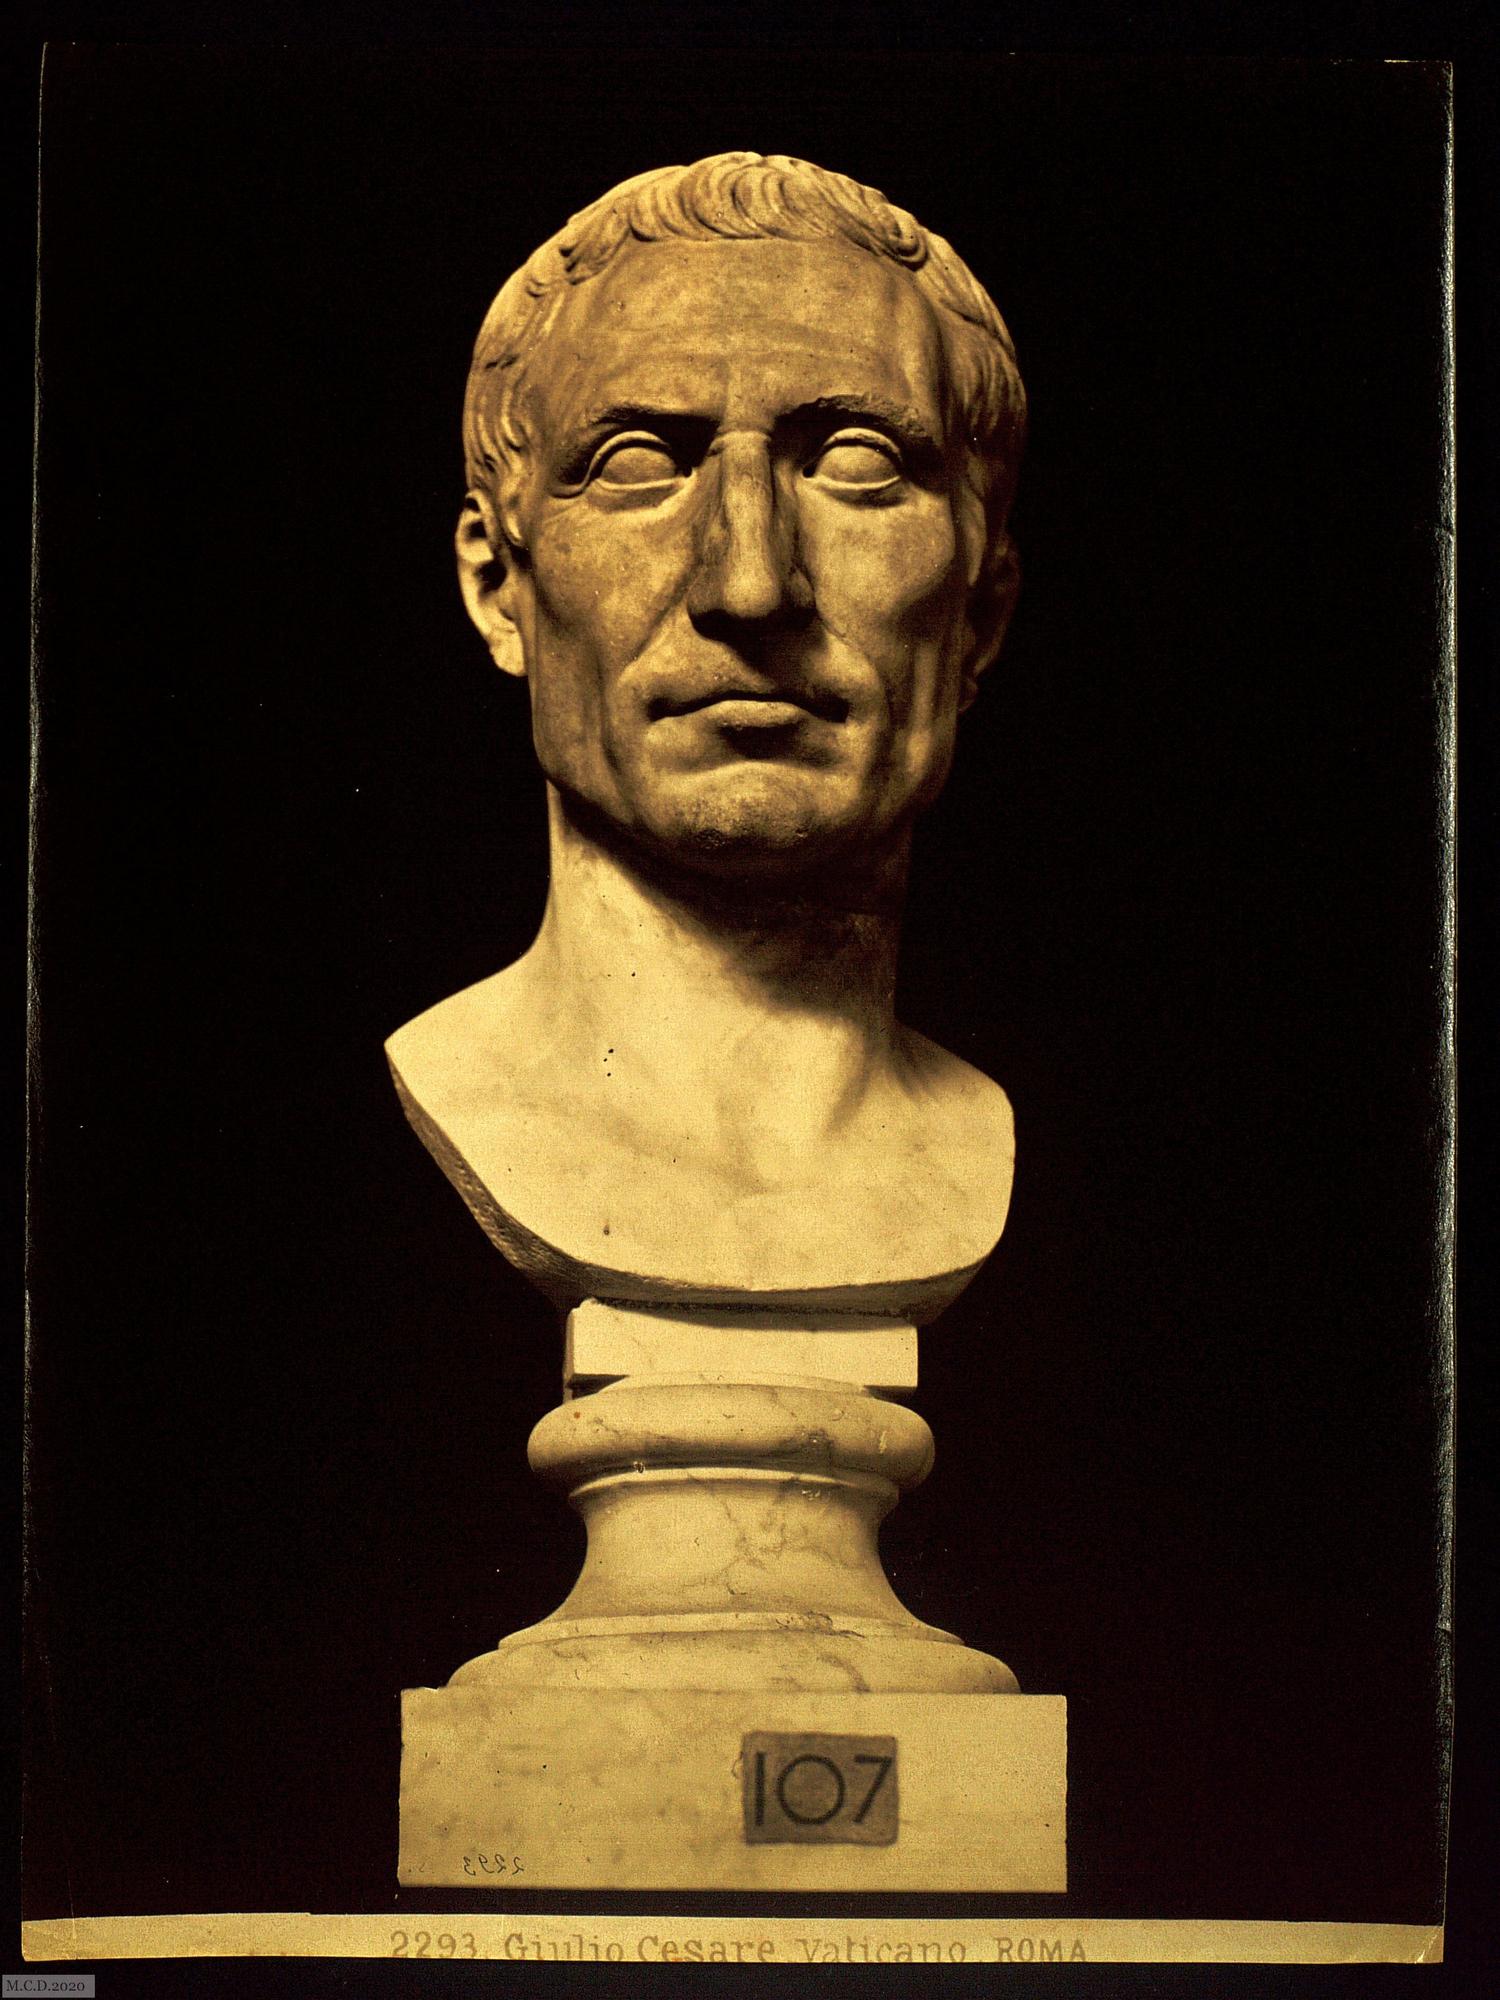 Julio César - Pretor romano (60 a.C.)